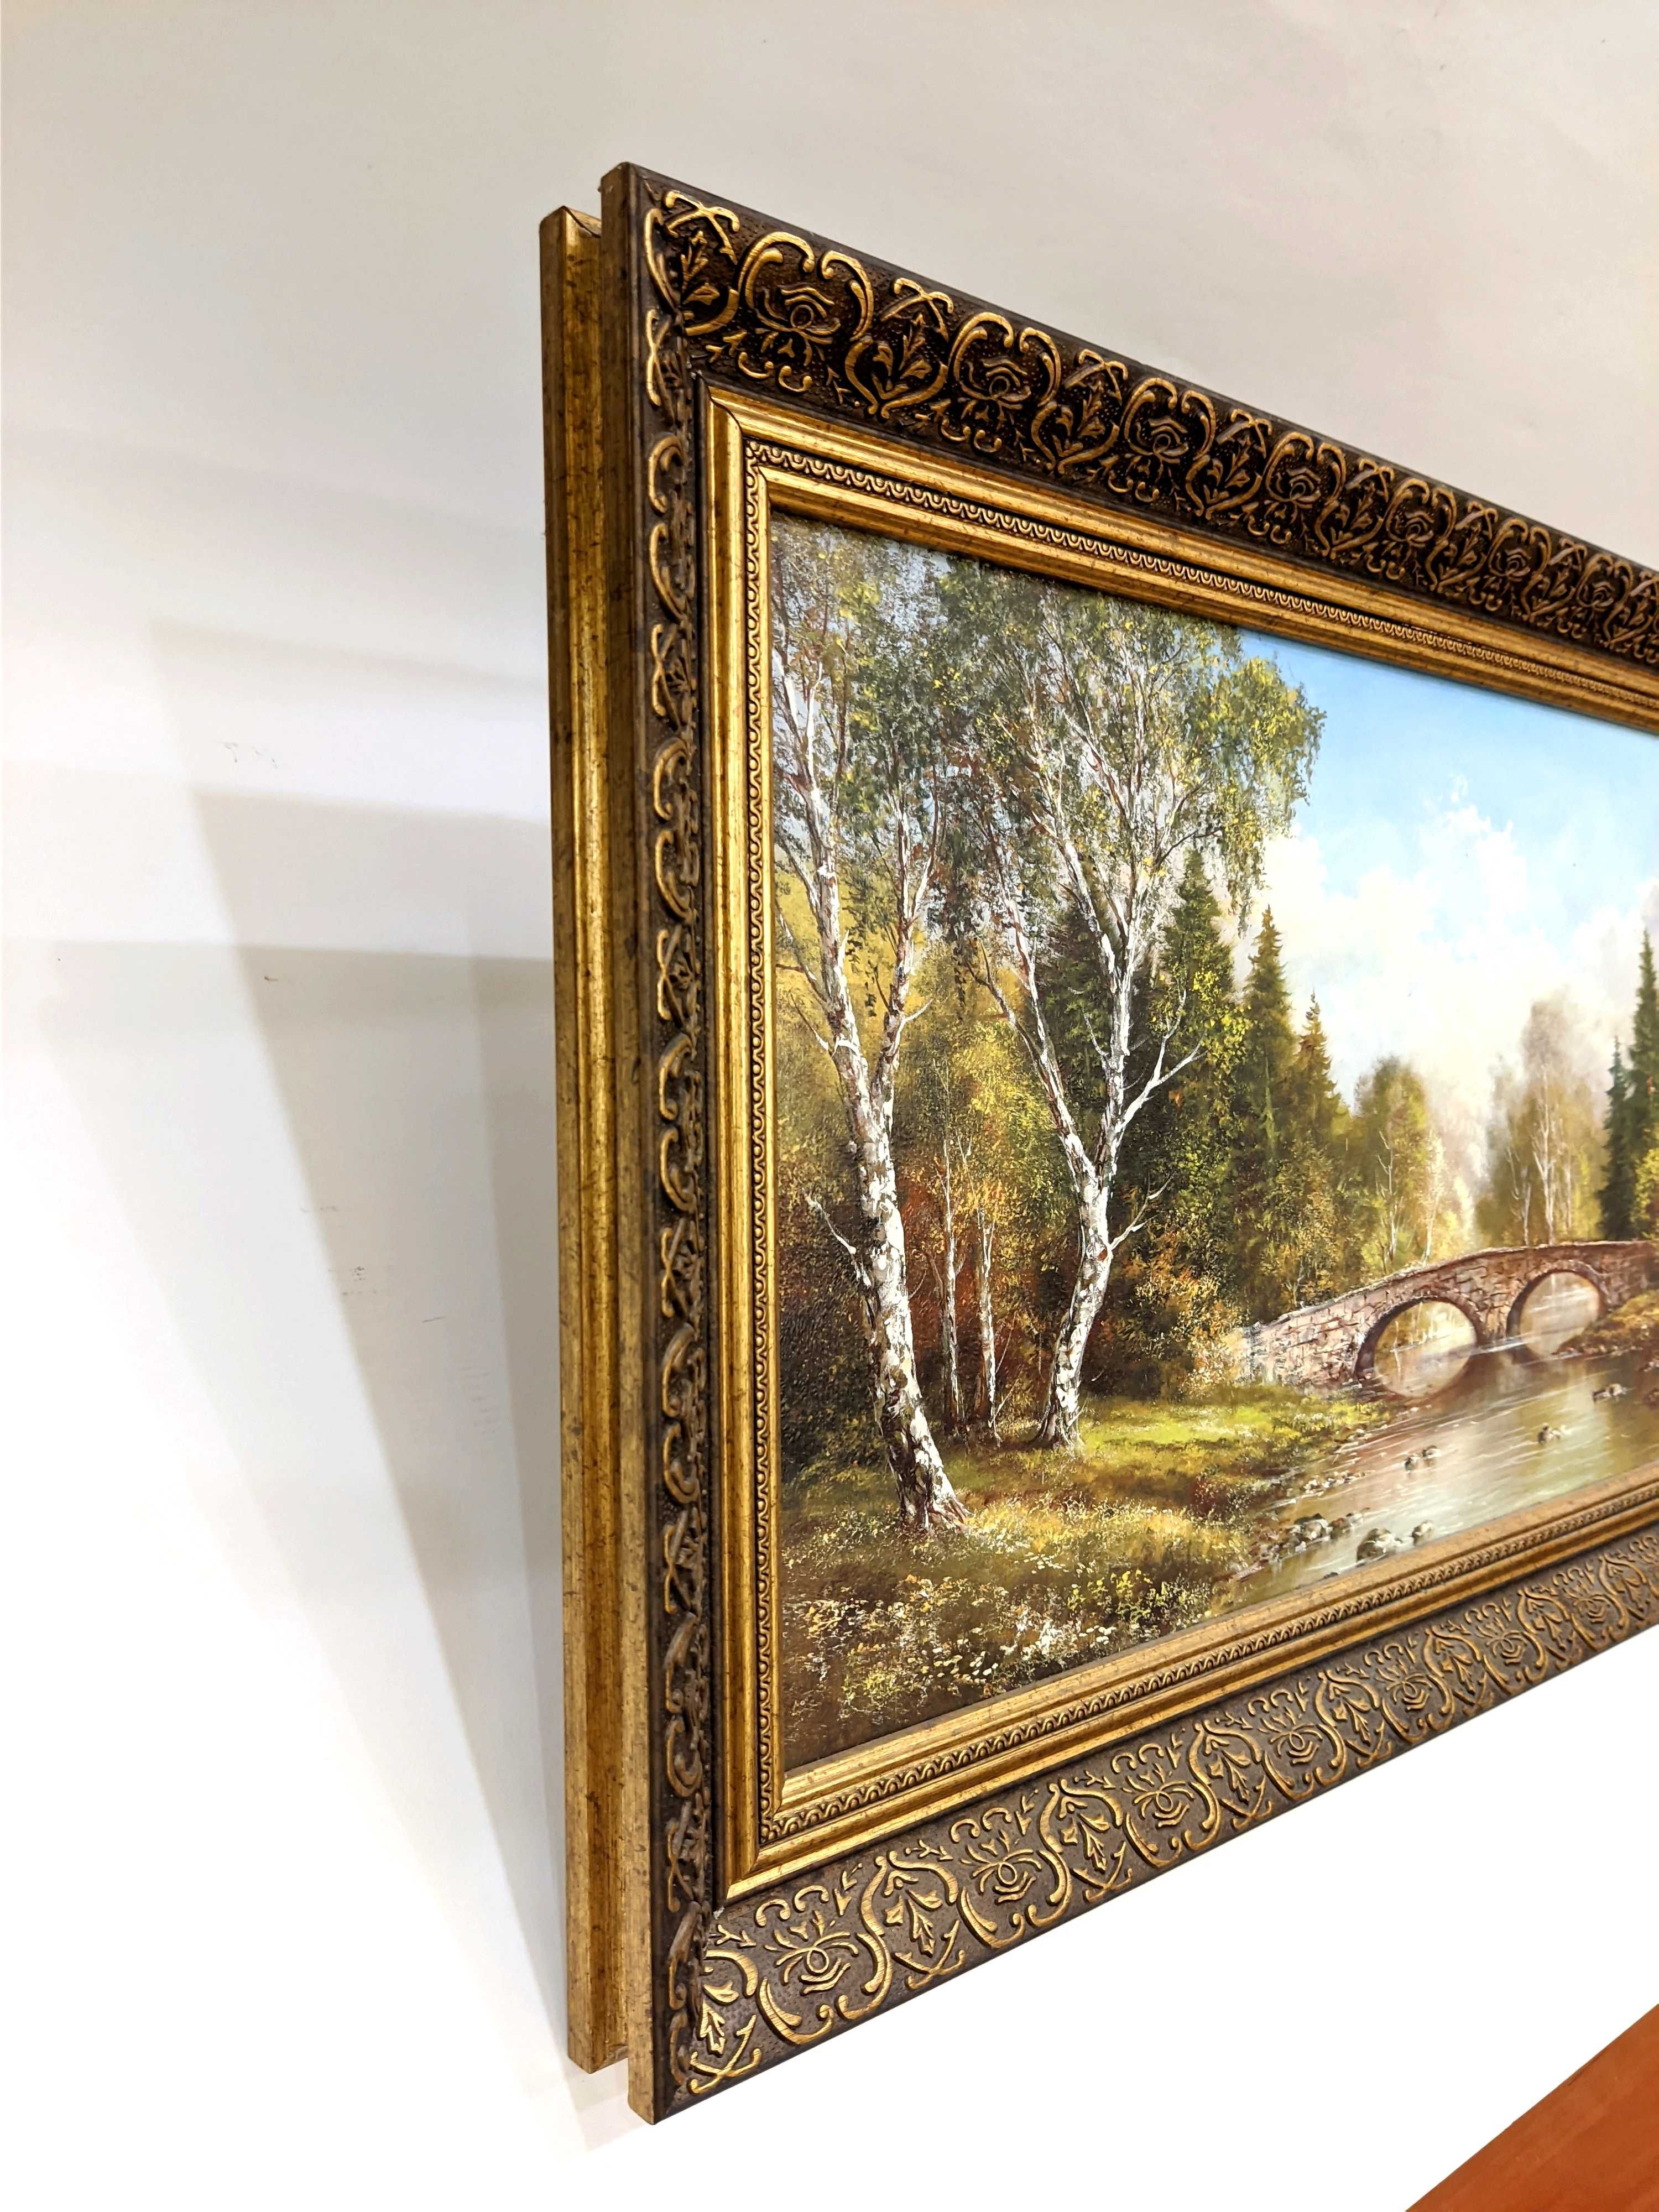 Картина "Каменный мост" багет 40*77 см, Германия.